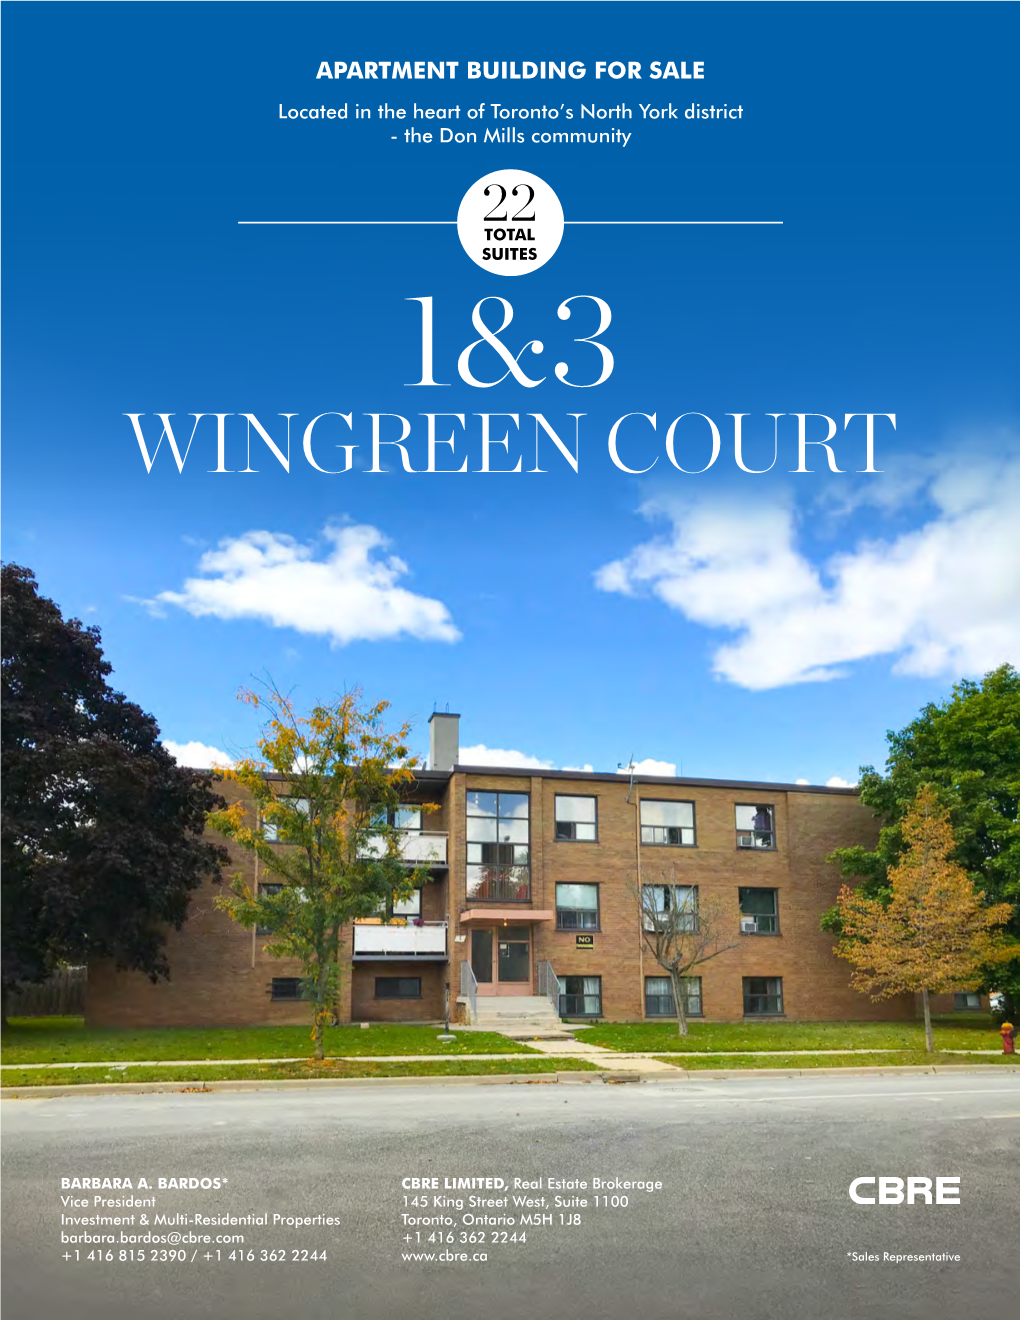 Wingreen Court